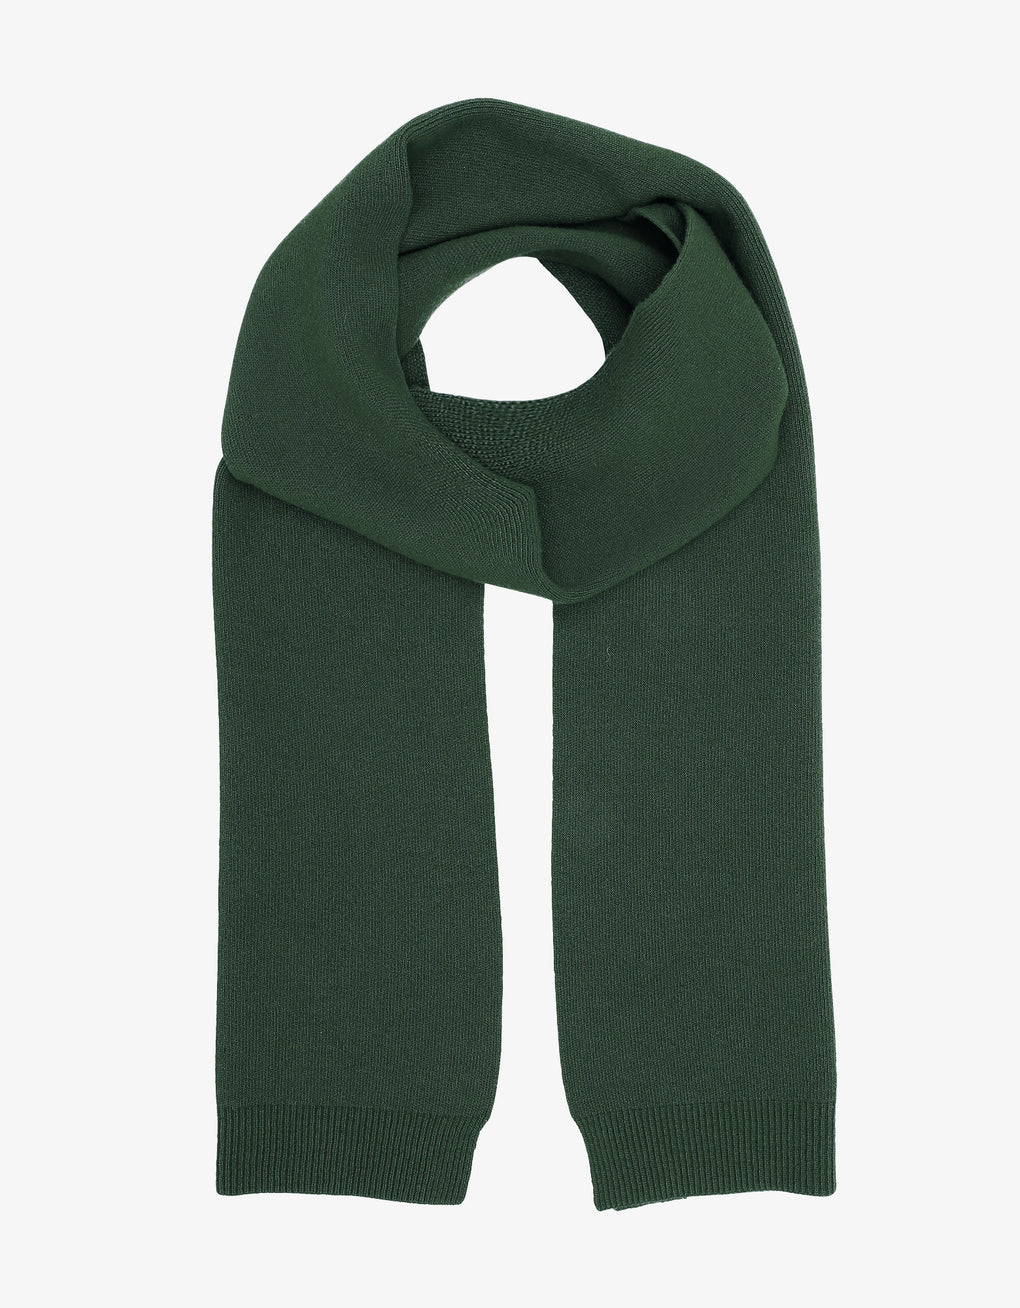 Merino wool scarf - emerald green